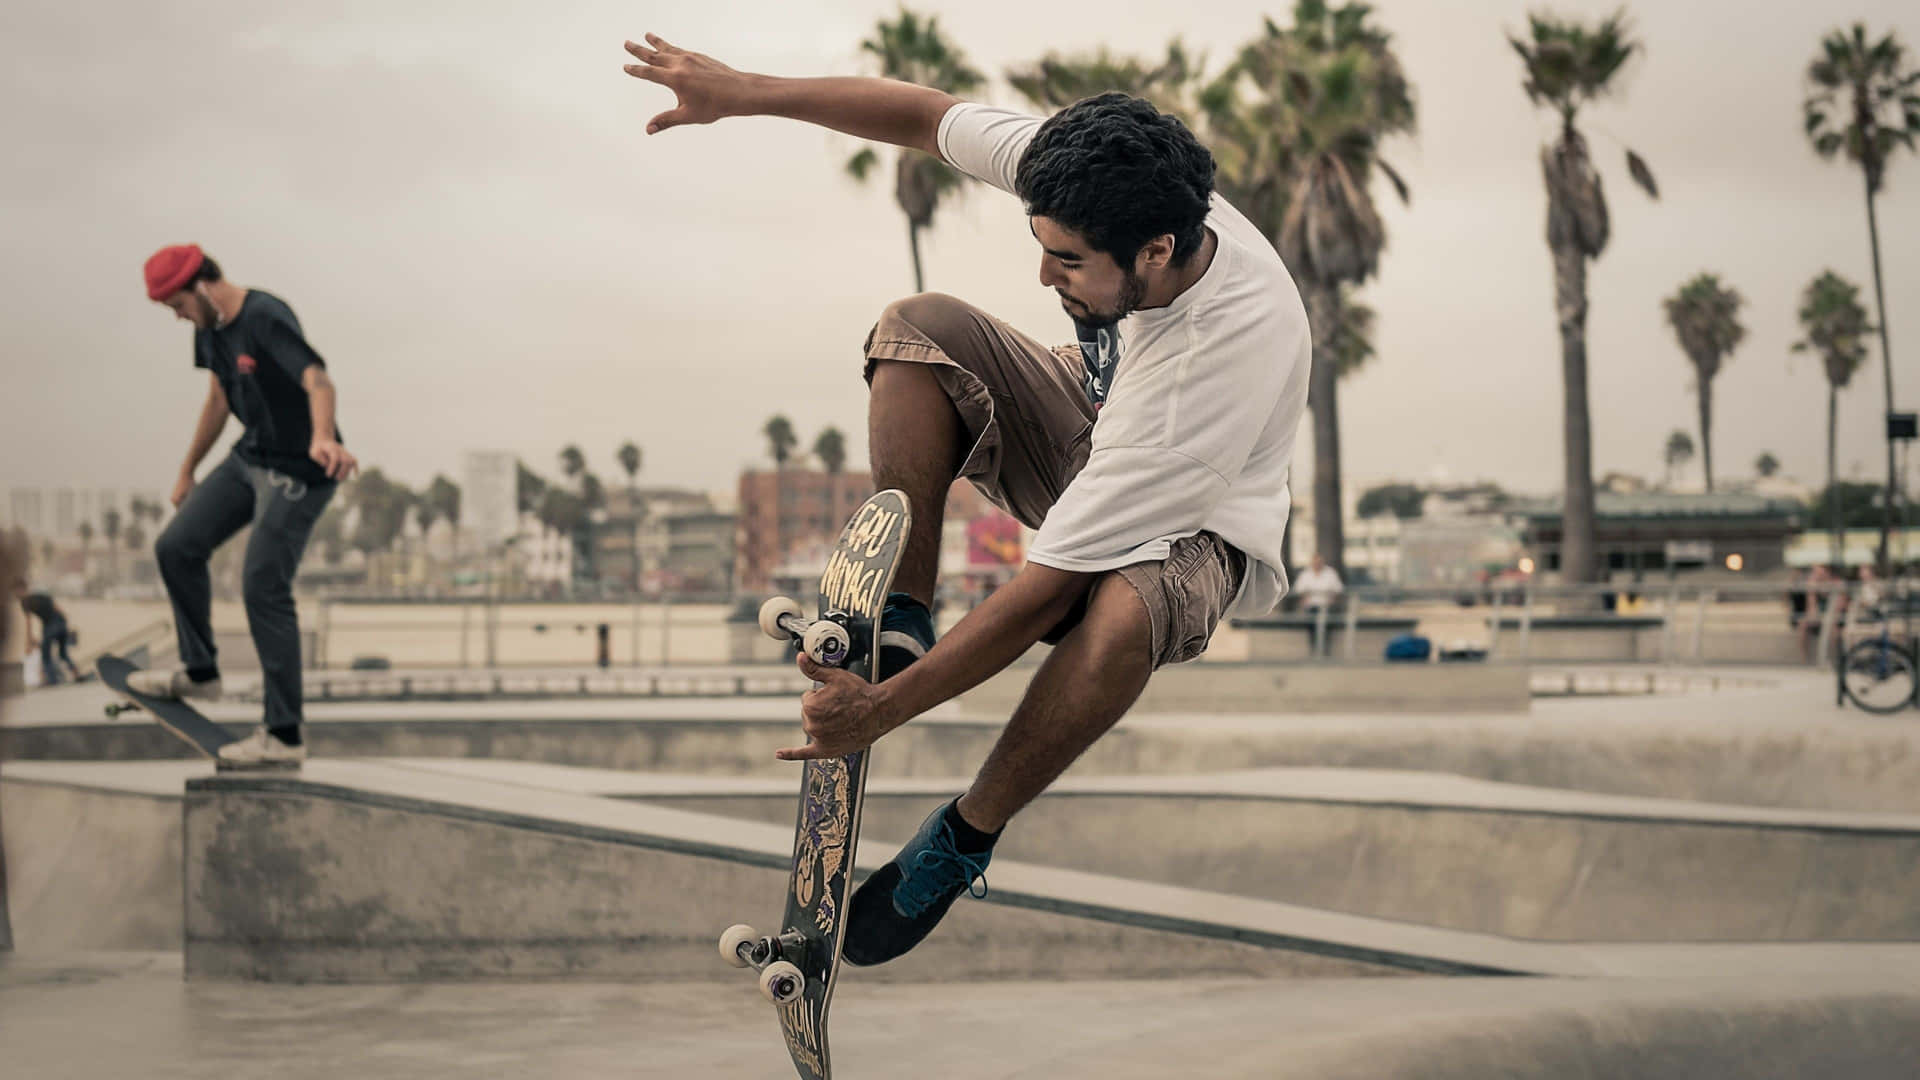 Skateboarderche Esegue Un Trick Di Kickflip